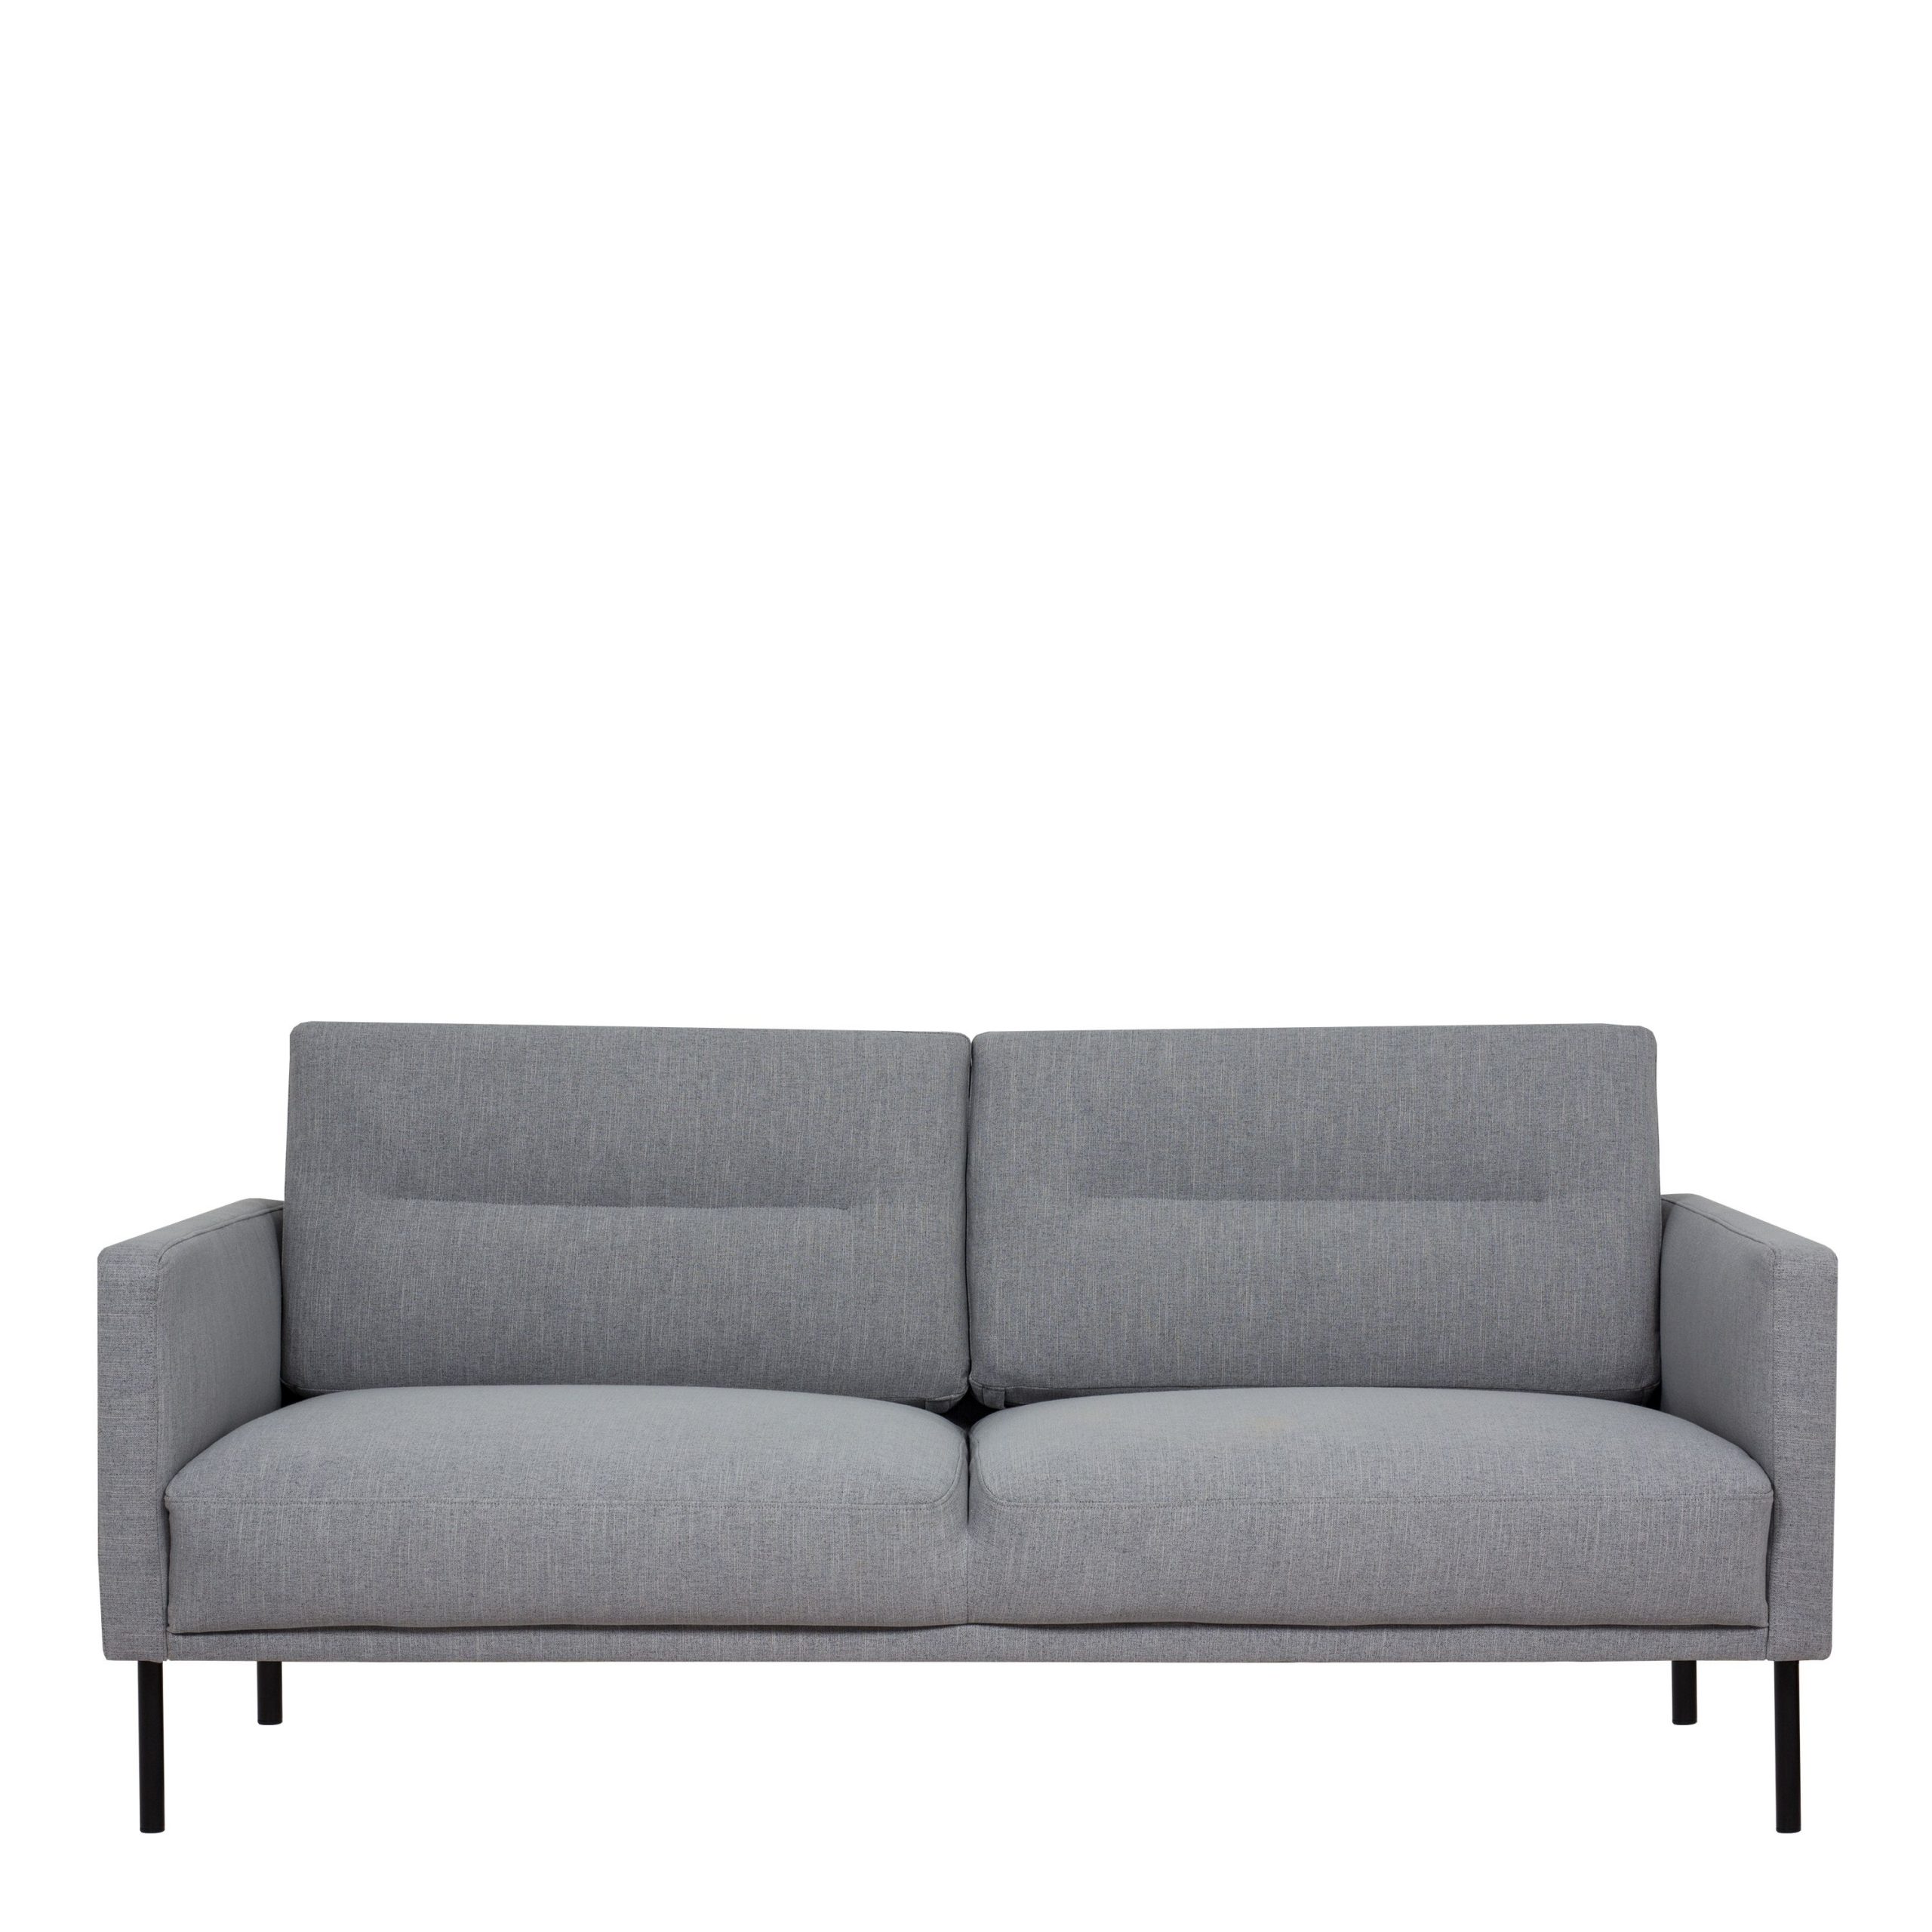 Larvik 2.5 Seater Sofa – Grey, Black Legs